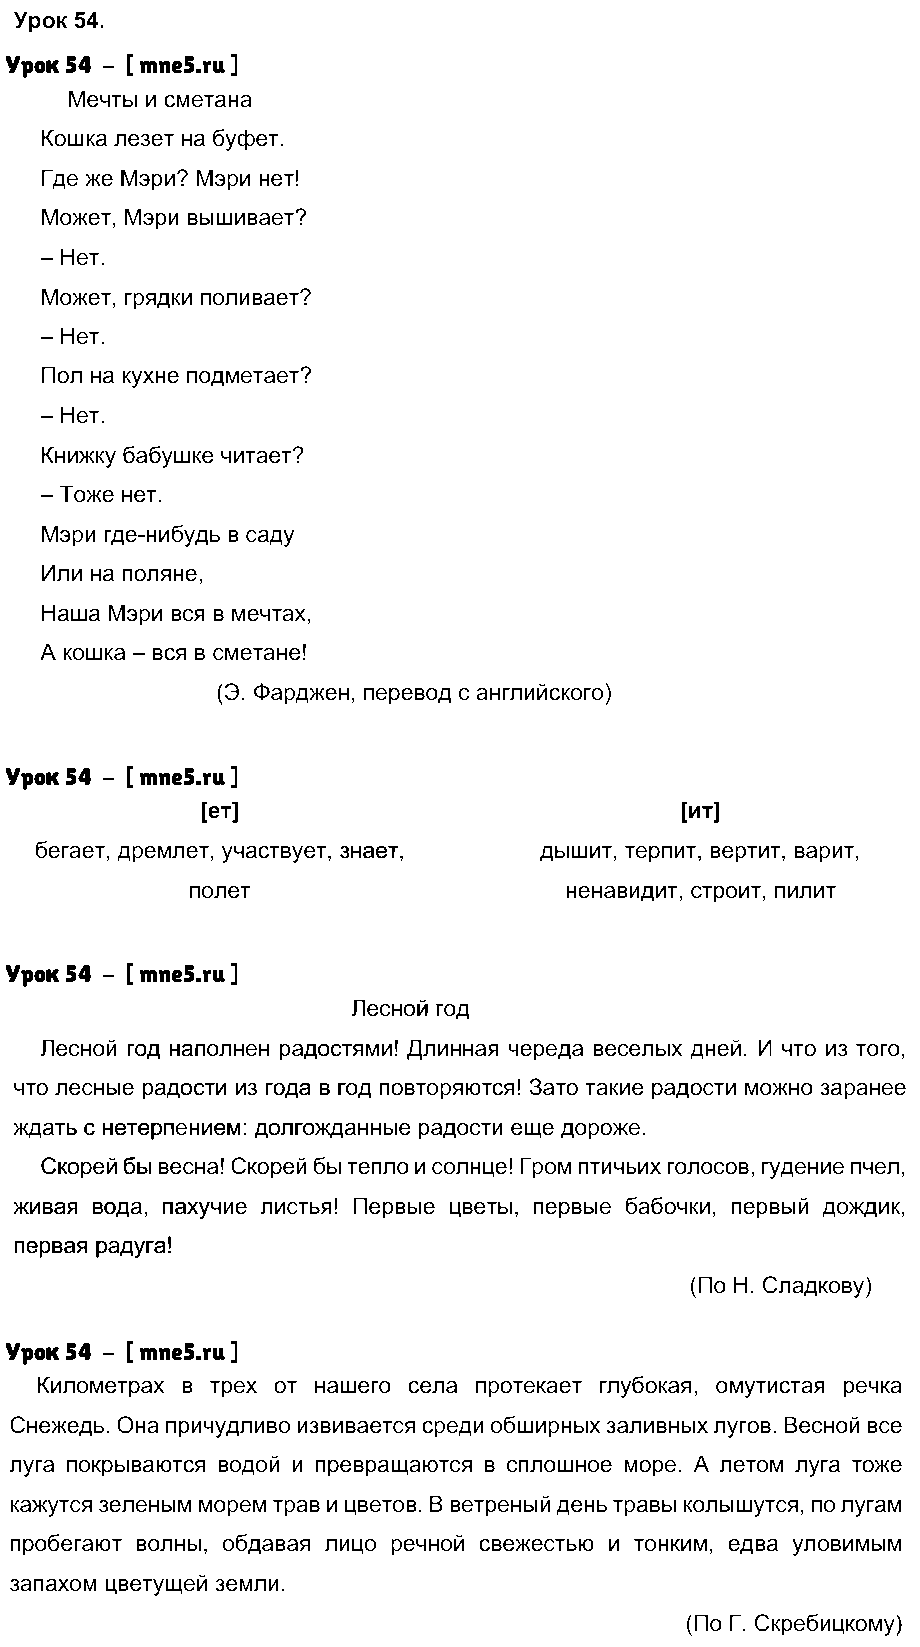 ГДЗ Русский язык 4 класс - Урок 54